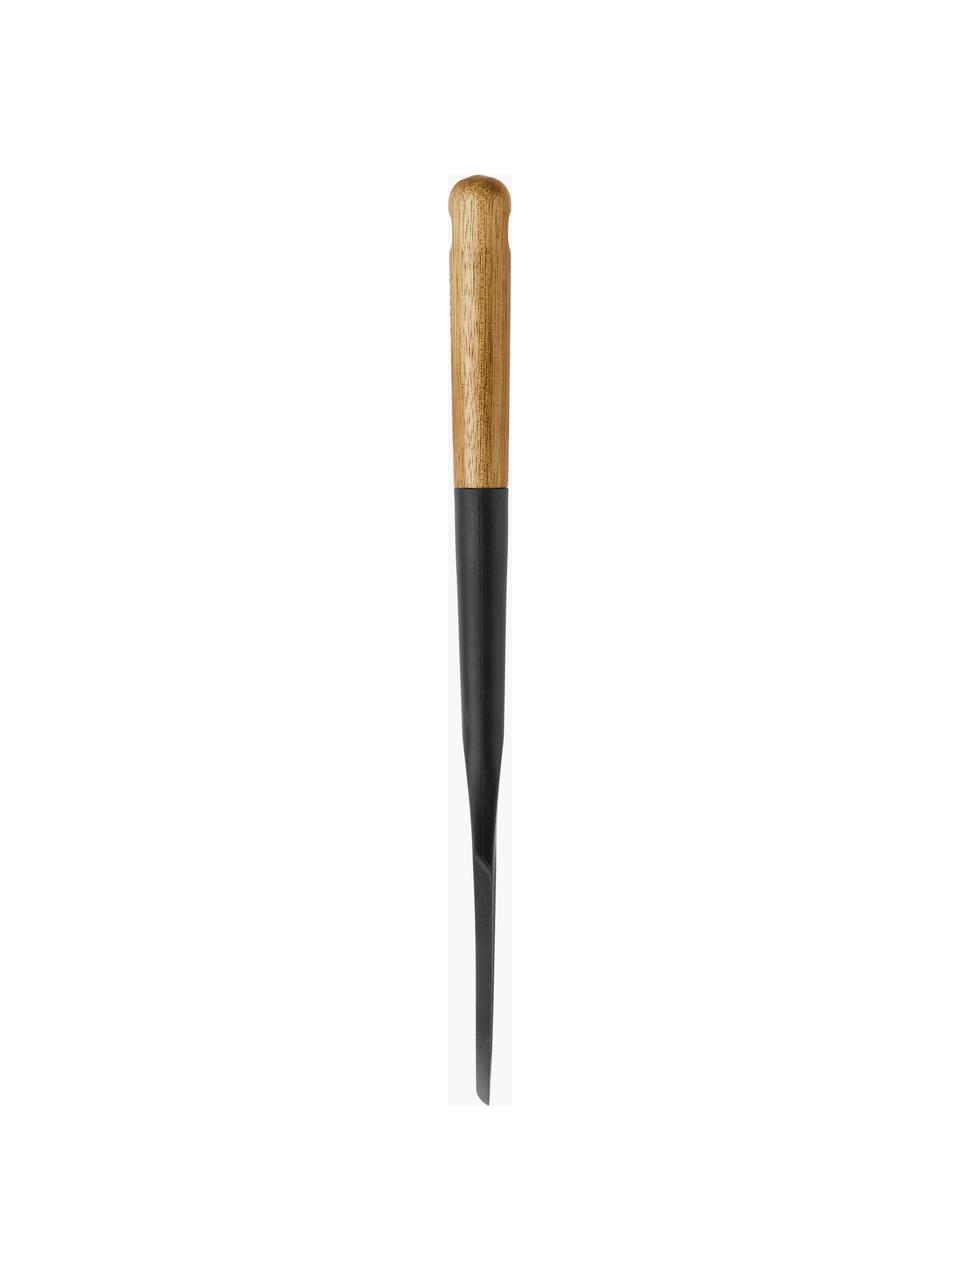 Cukrářská špachtle s rukojetí z akáciového dřeva Cook, Silikon, akáciové dřevo, Černá, tmavé dřevo, D 30 cm